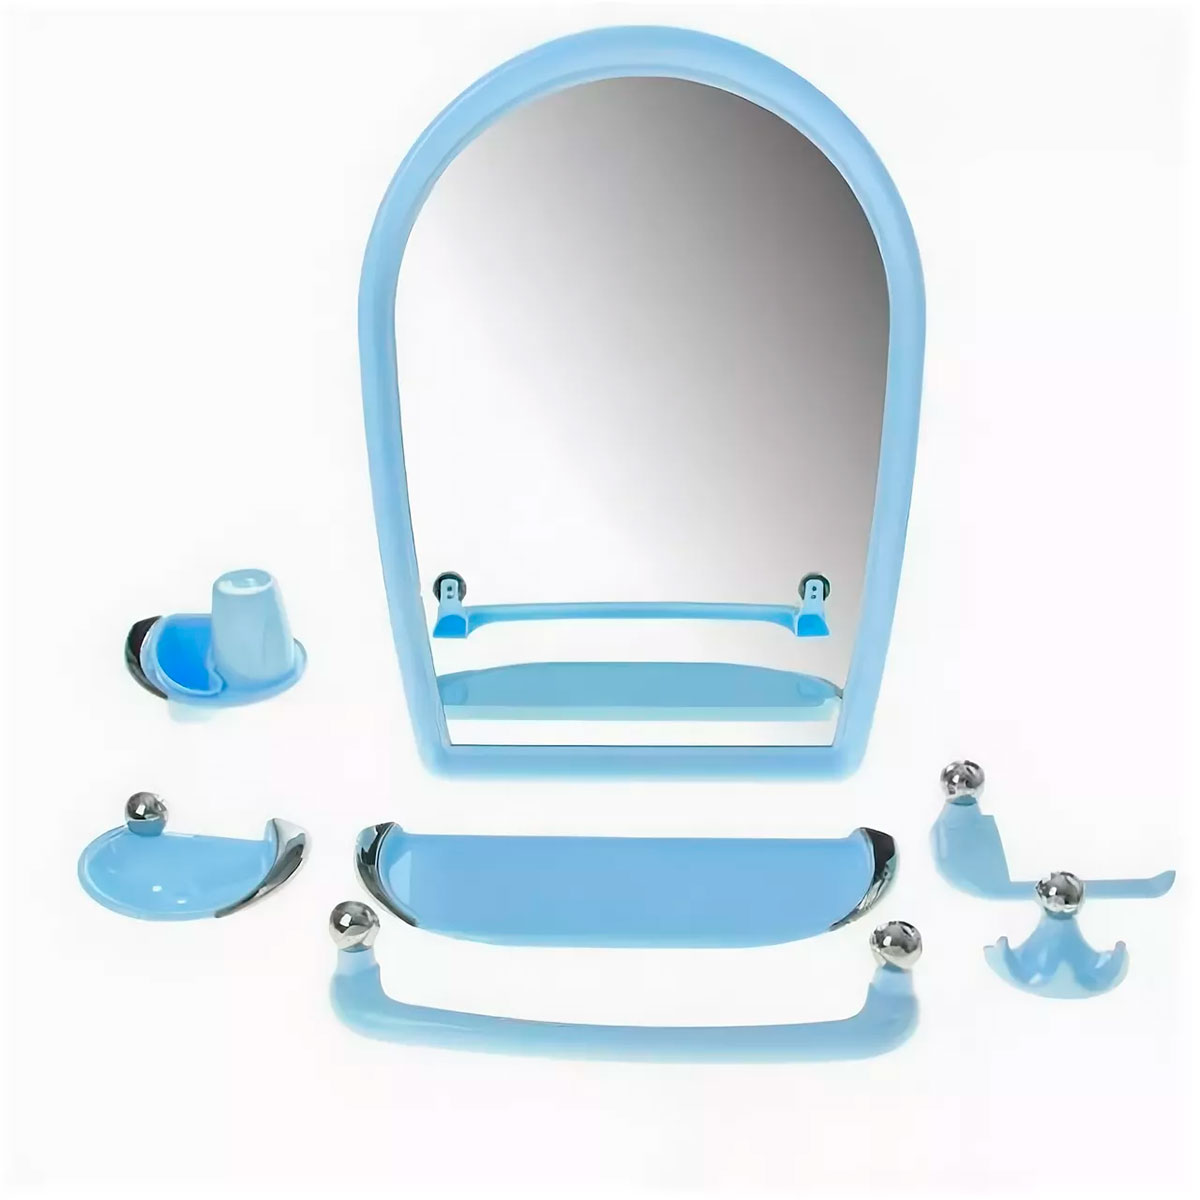 Комплект для ванны с зеркалом. Набор для ванной Беросси 46 светло-бежевый. Беросси набор для ванной Вива Классик. Набор для ванной с зеркалом Элегант 06-02. Набор для ванной Berossi Вива Классик 10208 голубой.